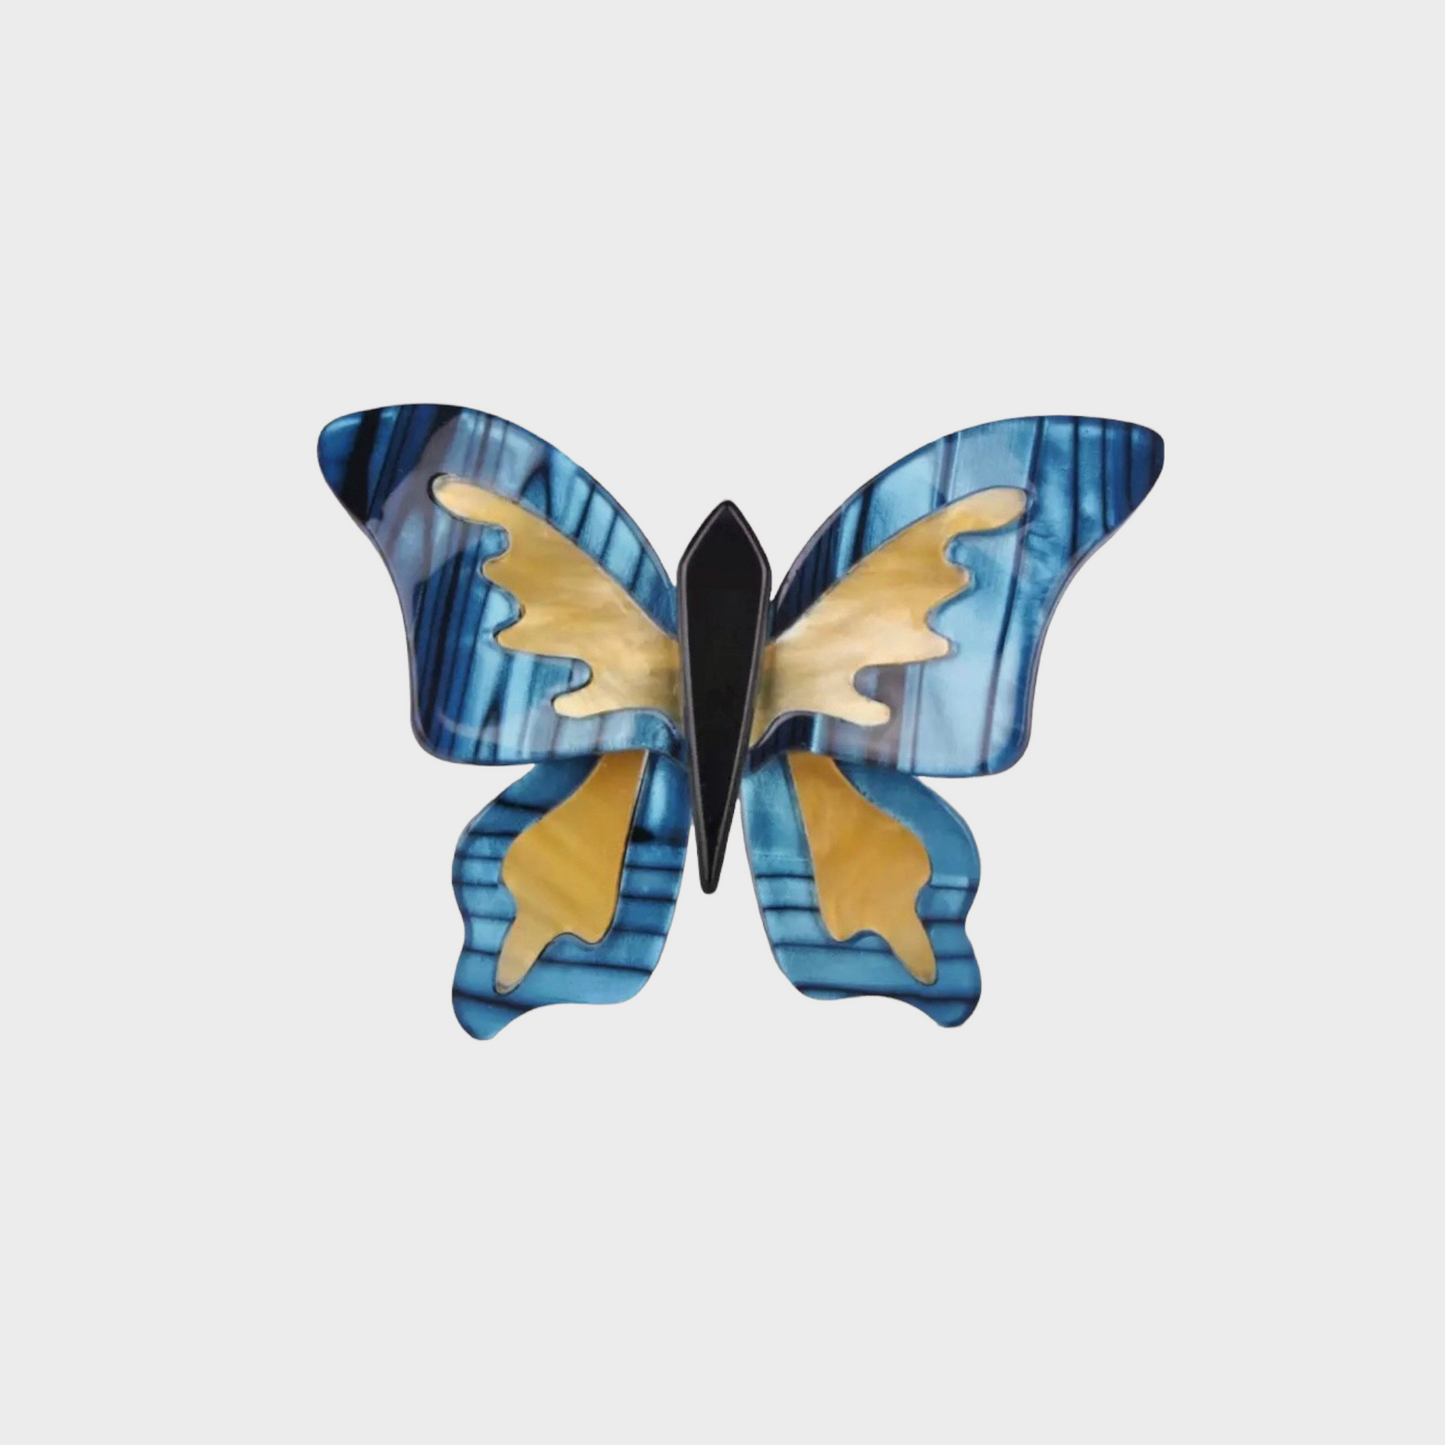 Acrylic butterfly brooch